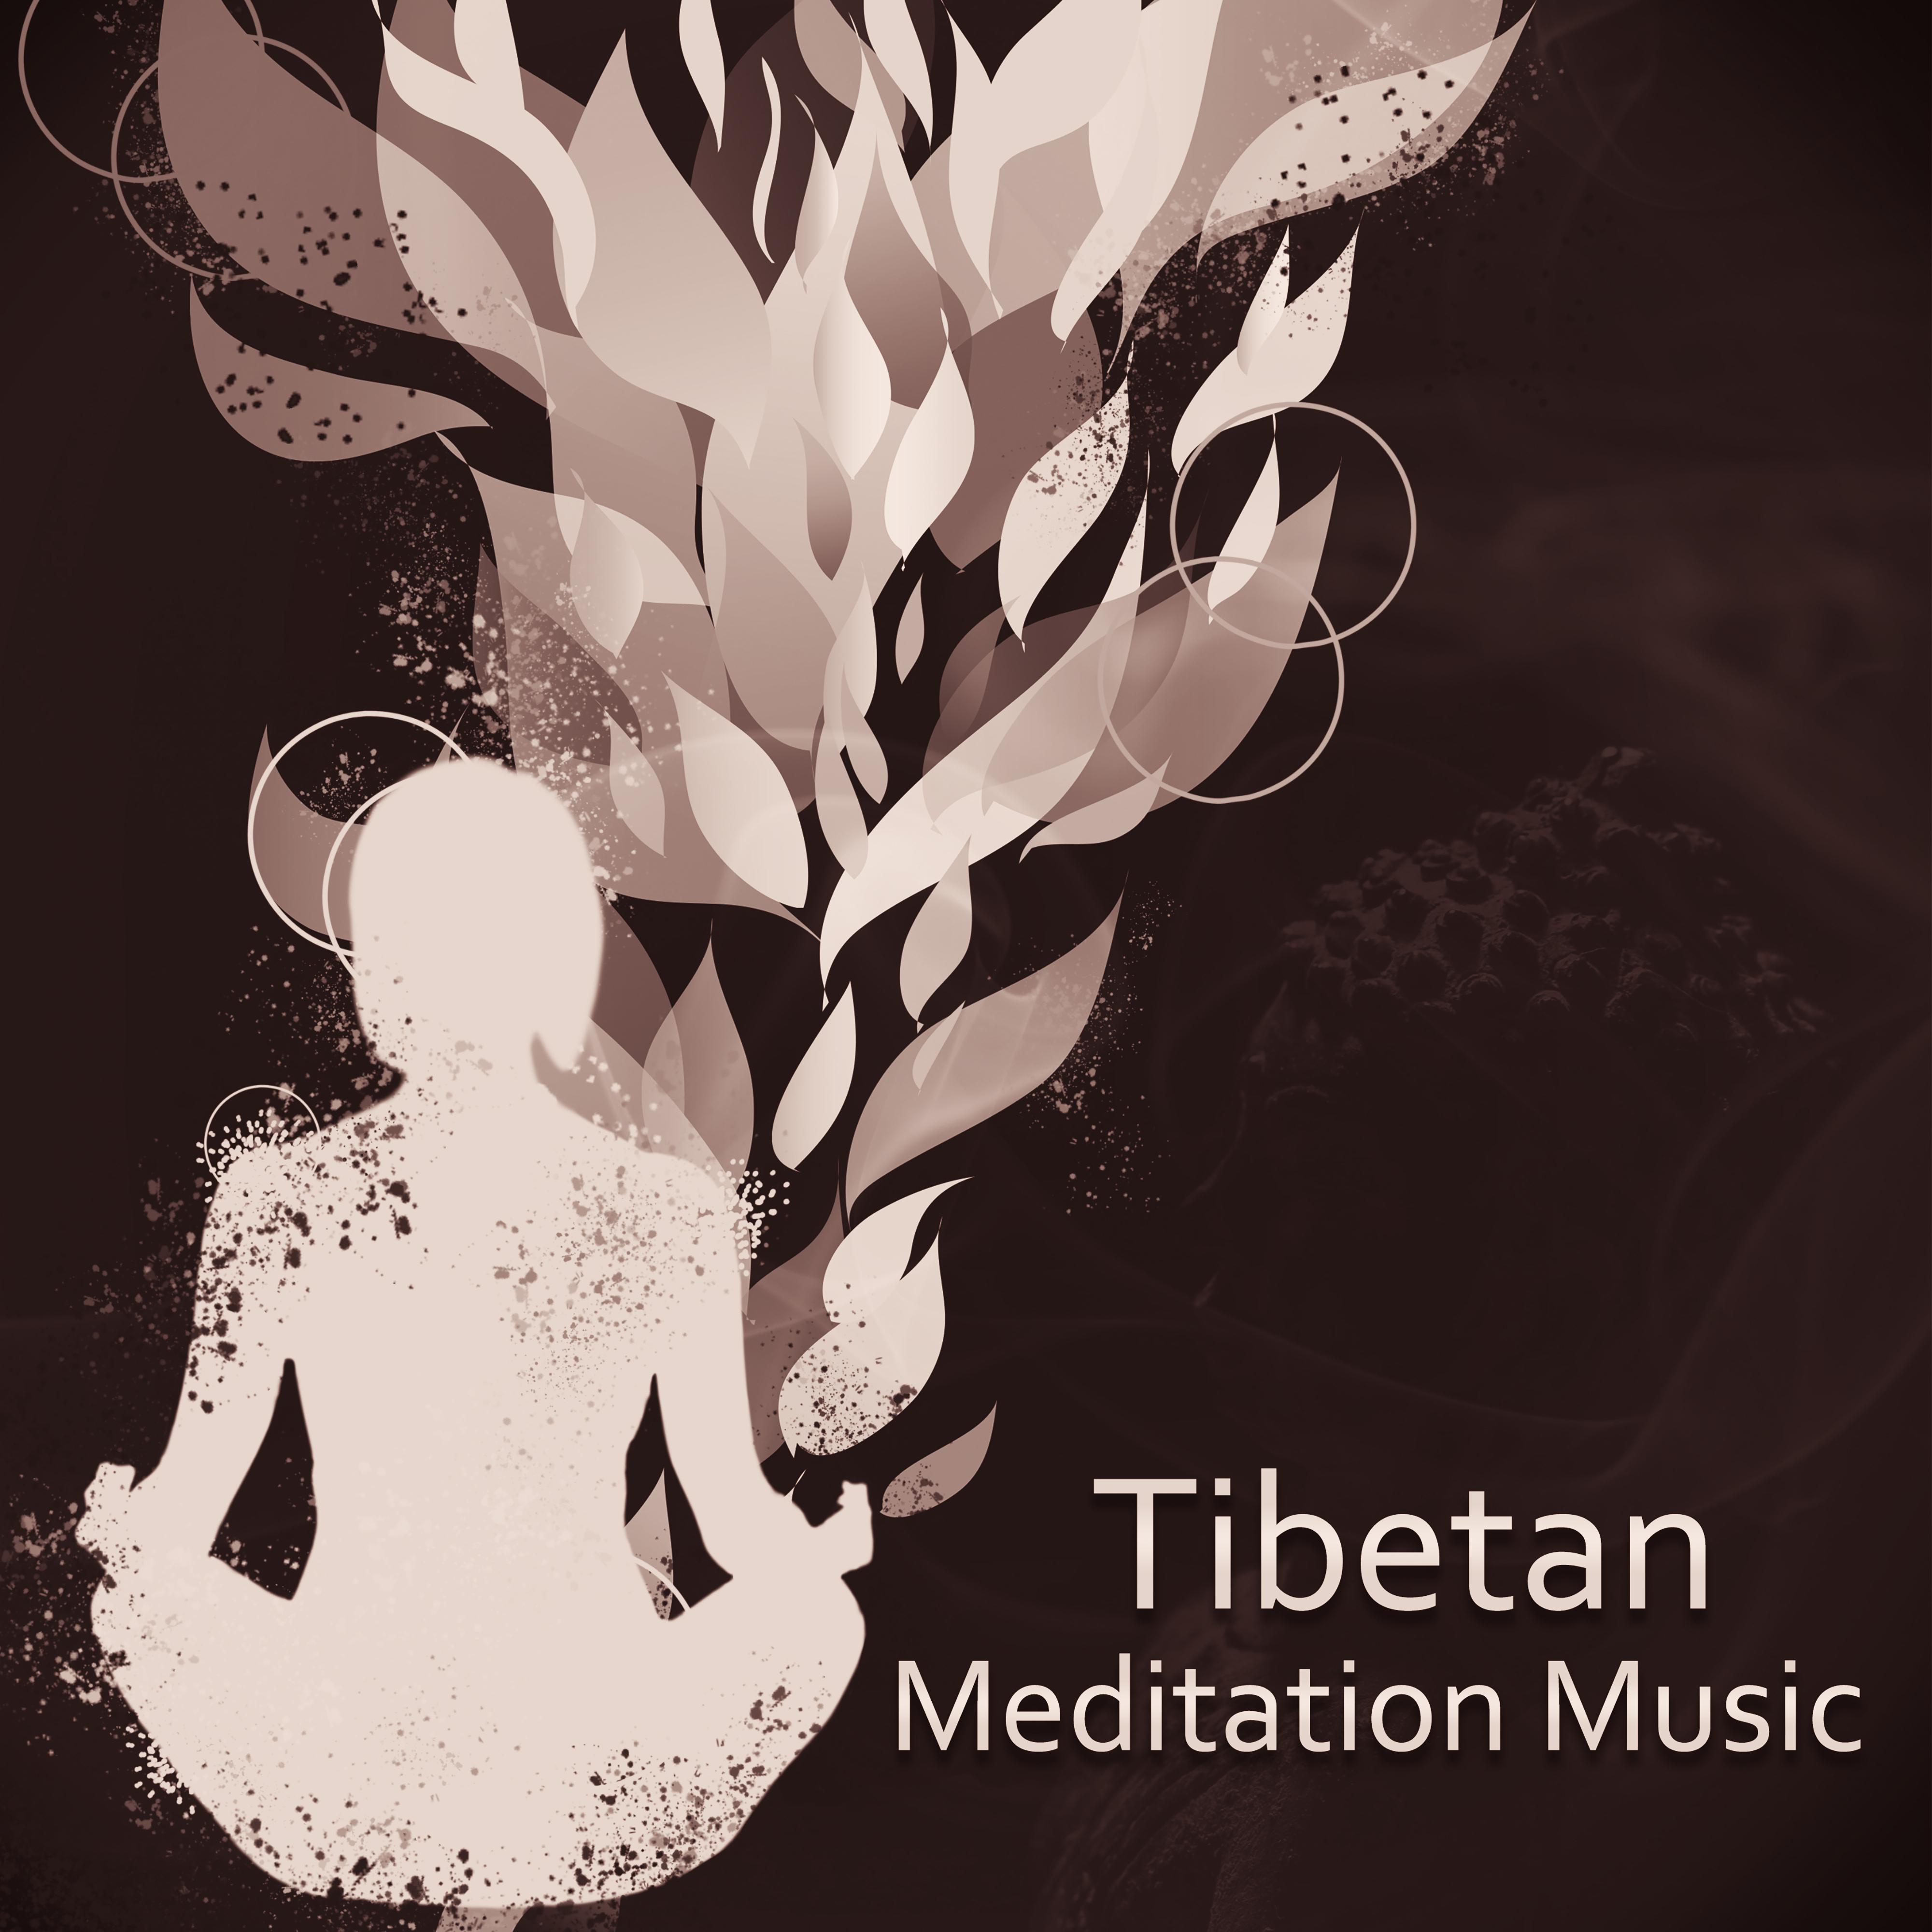 Tibetan Meditation Music – New Age Sounds, Yoga Practice, Meditation Music, Yoga for Beginners, Pilates